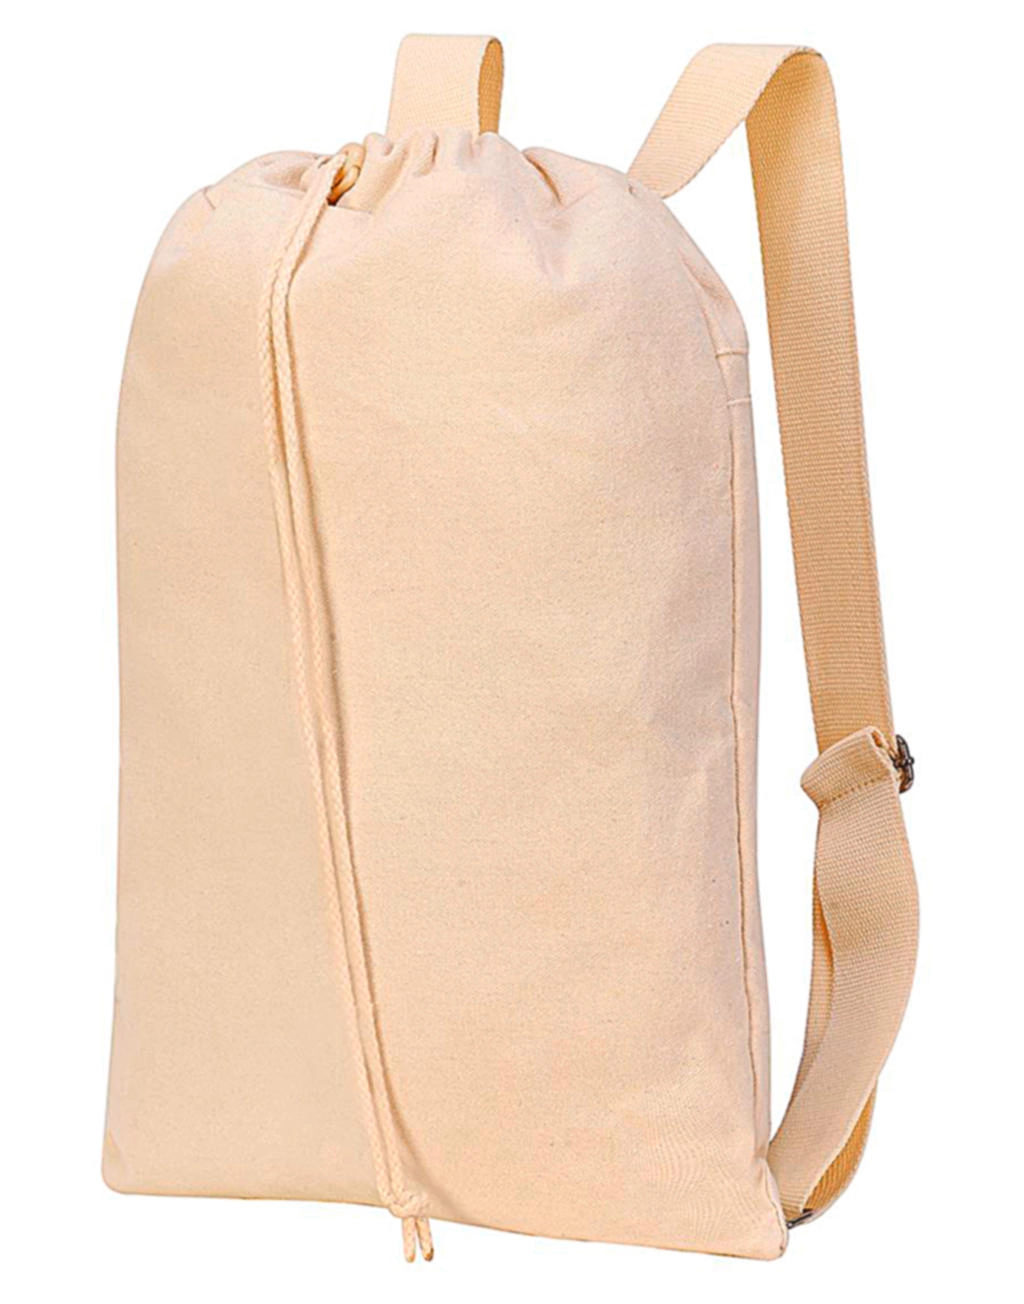 Sheffield Cotton Drawstring Backpack zum Besticken und Bedrucken mit Ihren Logo, Schriftzug oder Motiv.